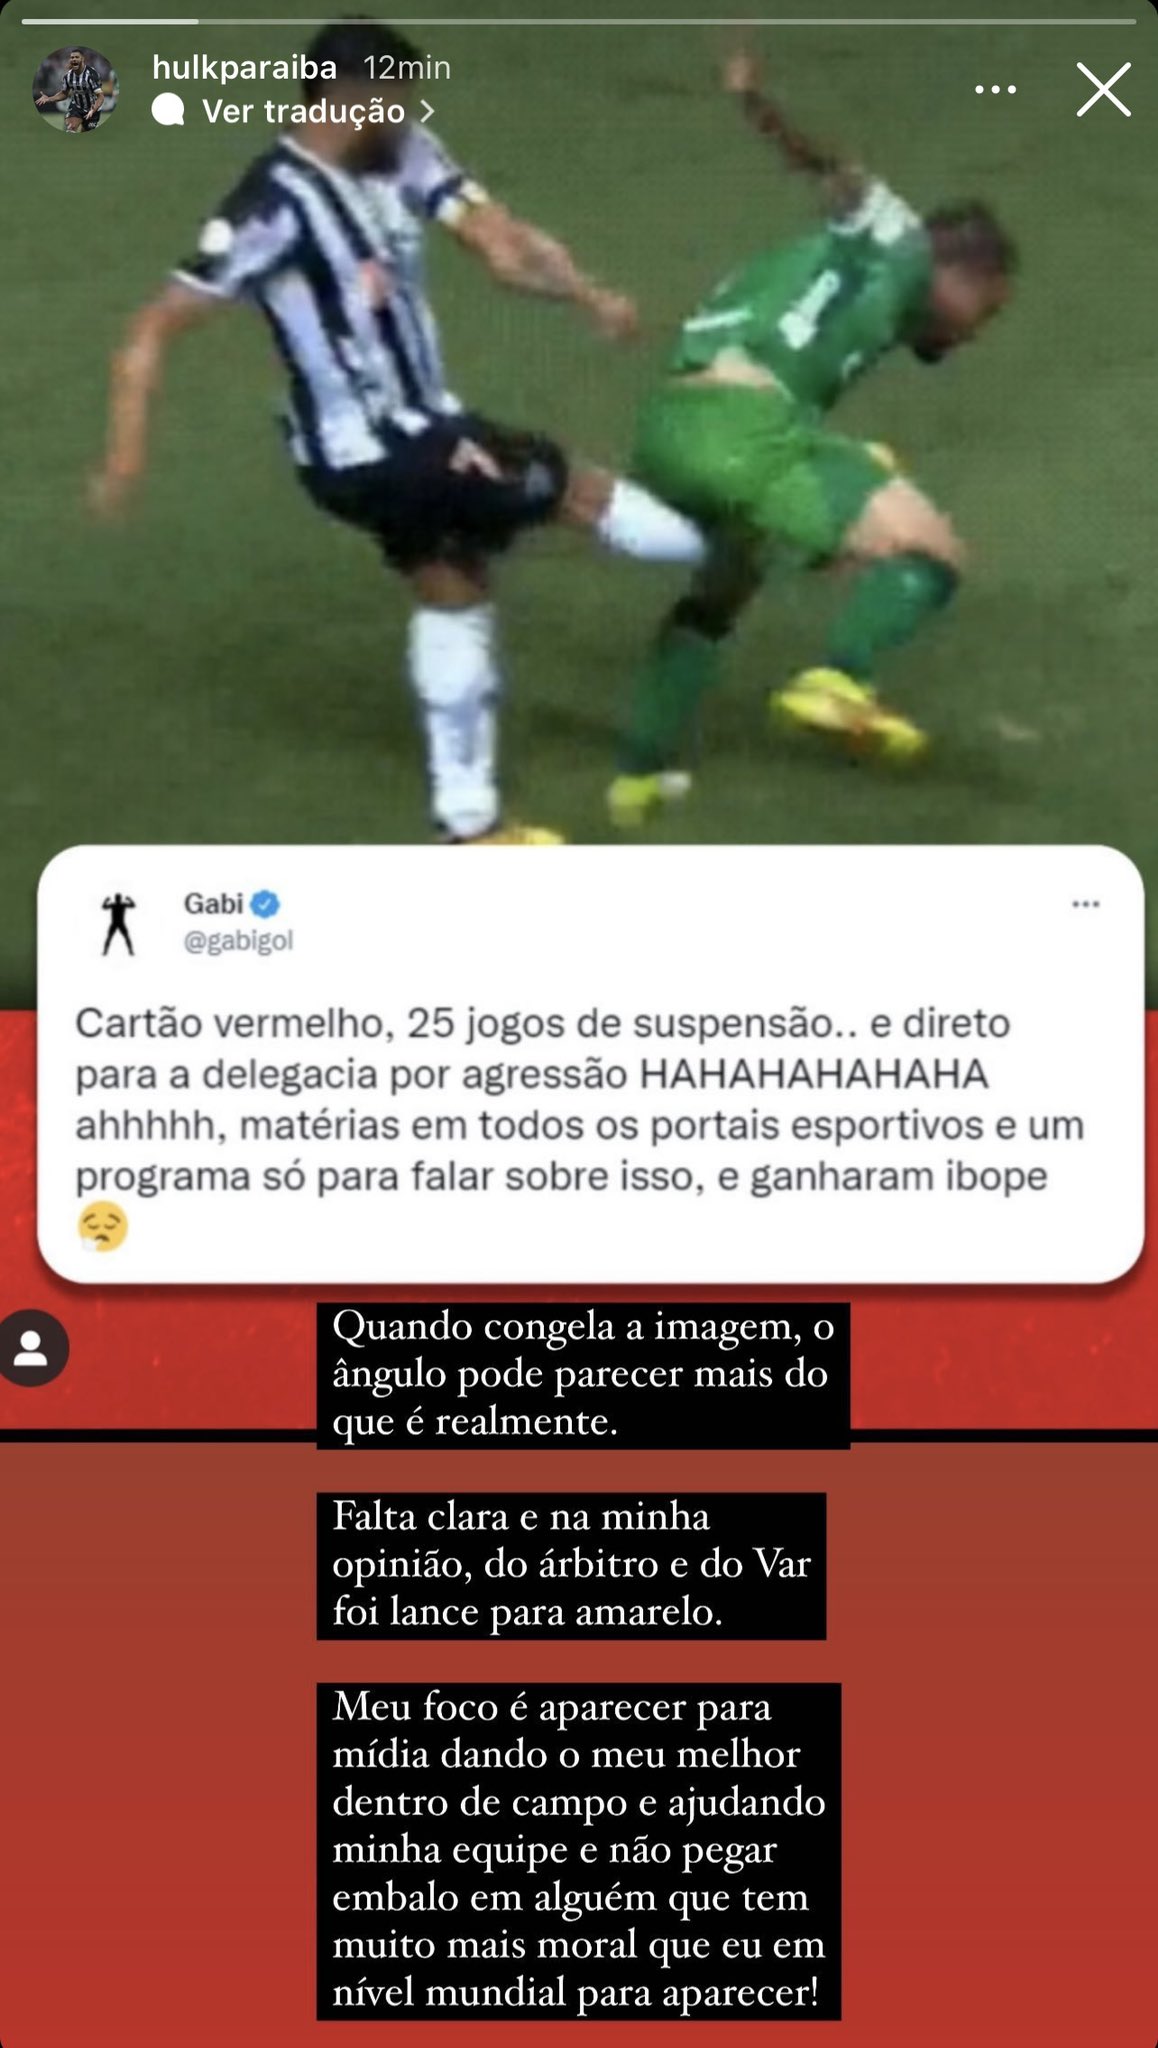 Gabigol polemiza e Hulk responde de forma inesperada sobre lance em jogo do Atlético-MG